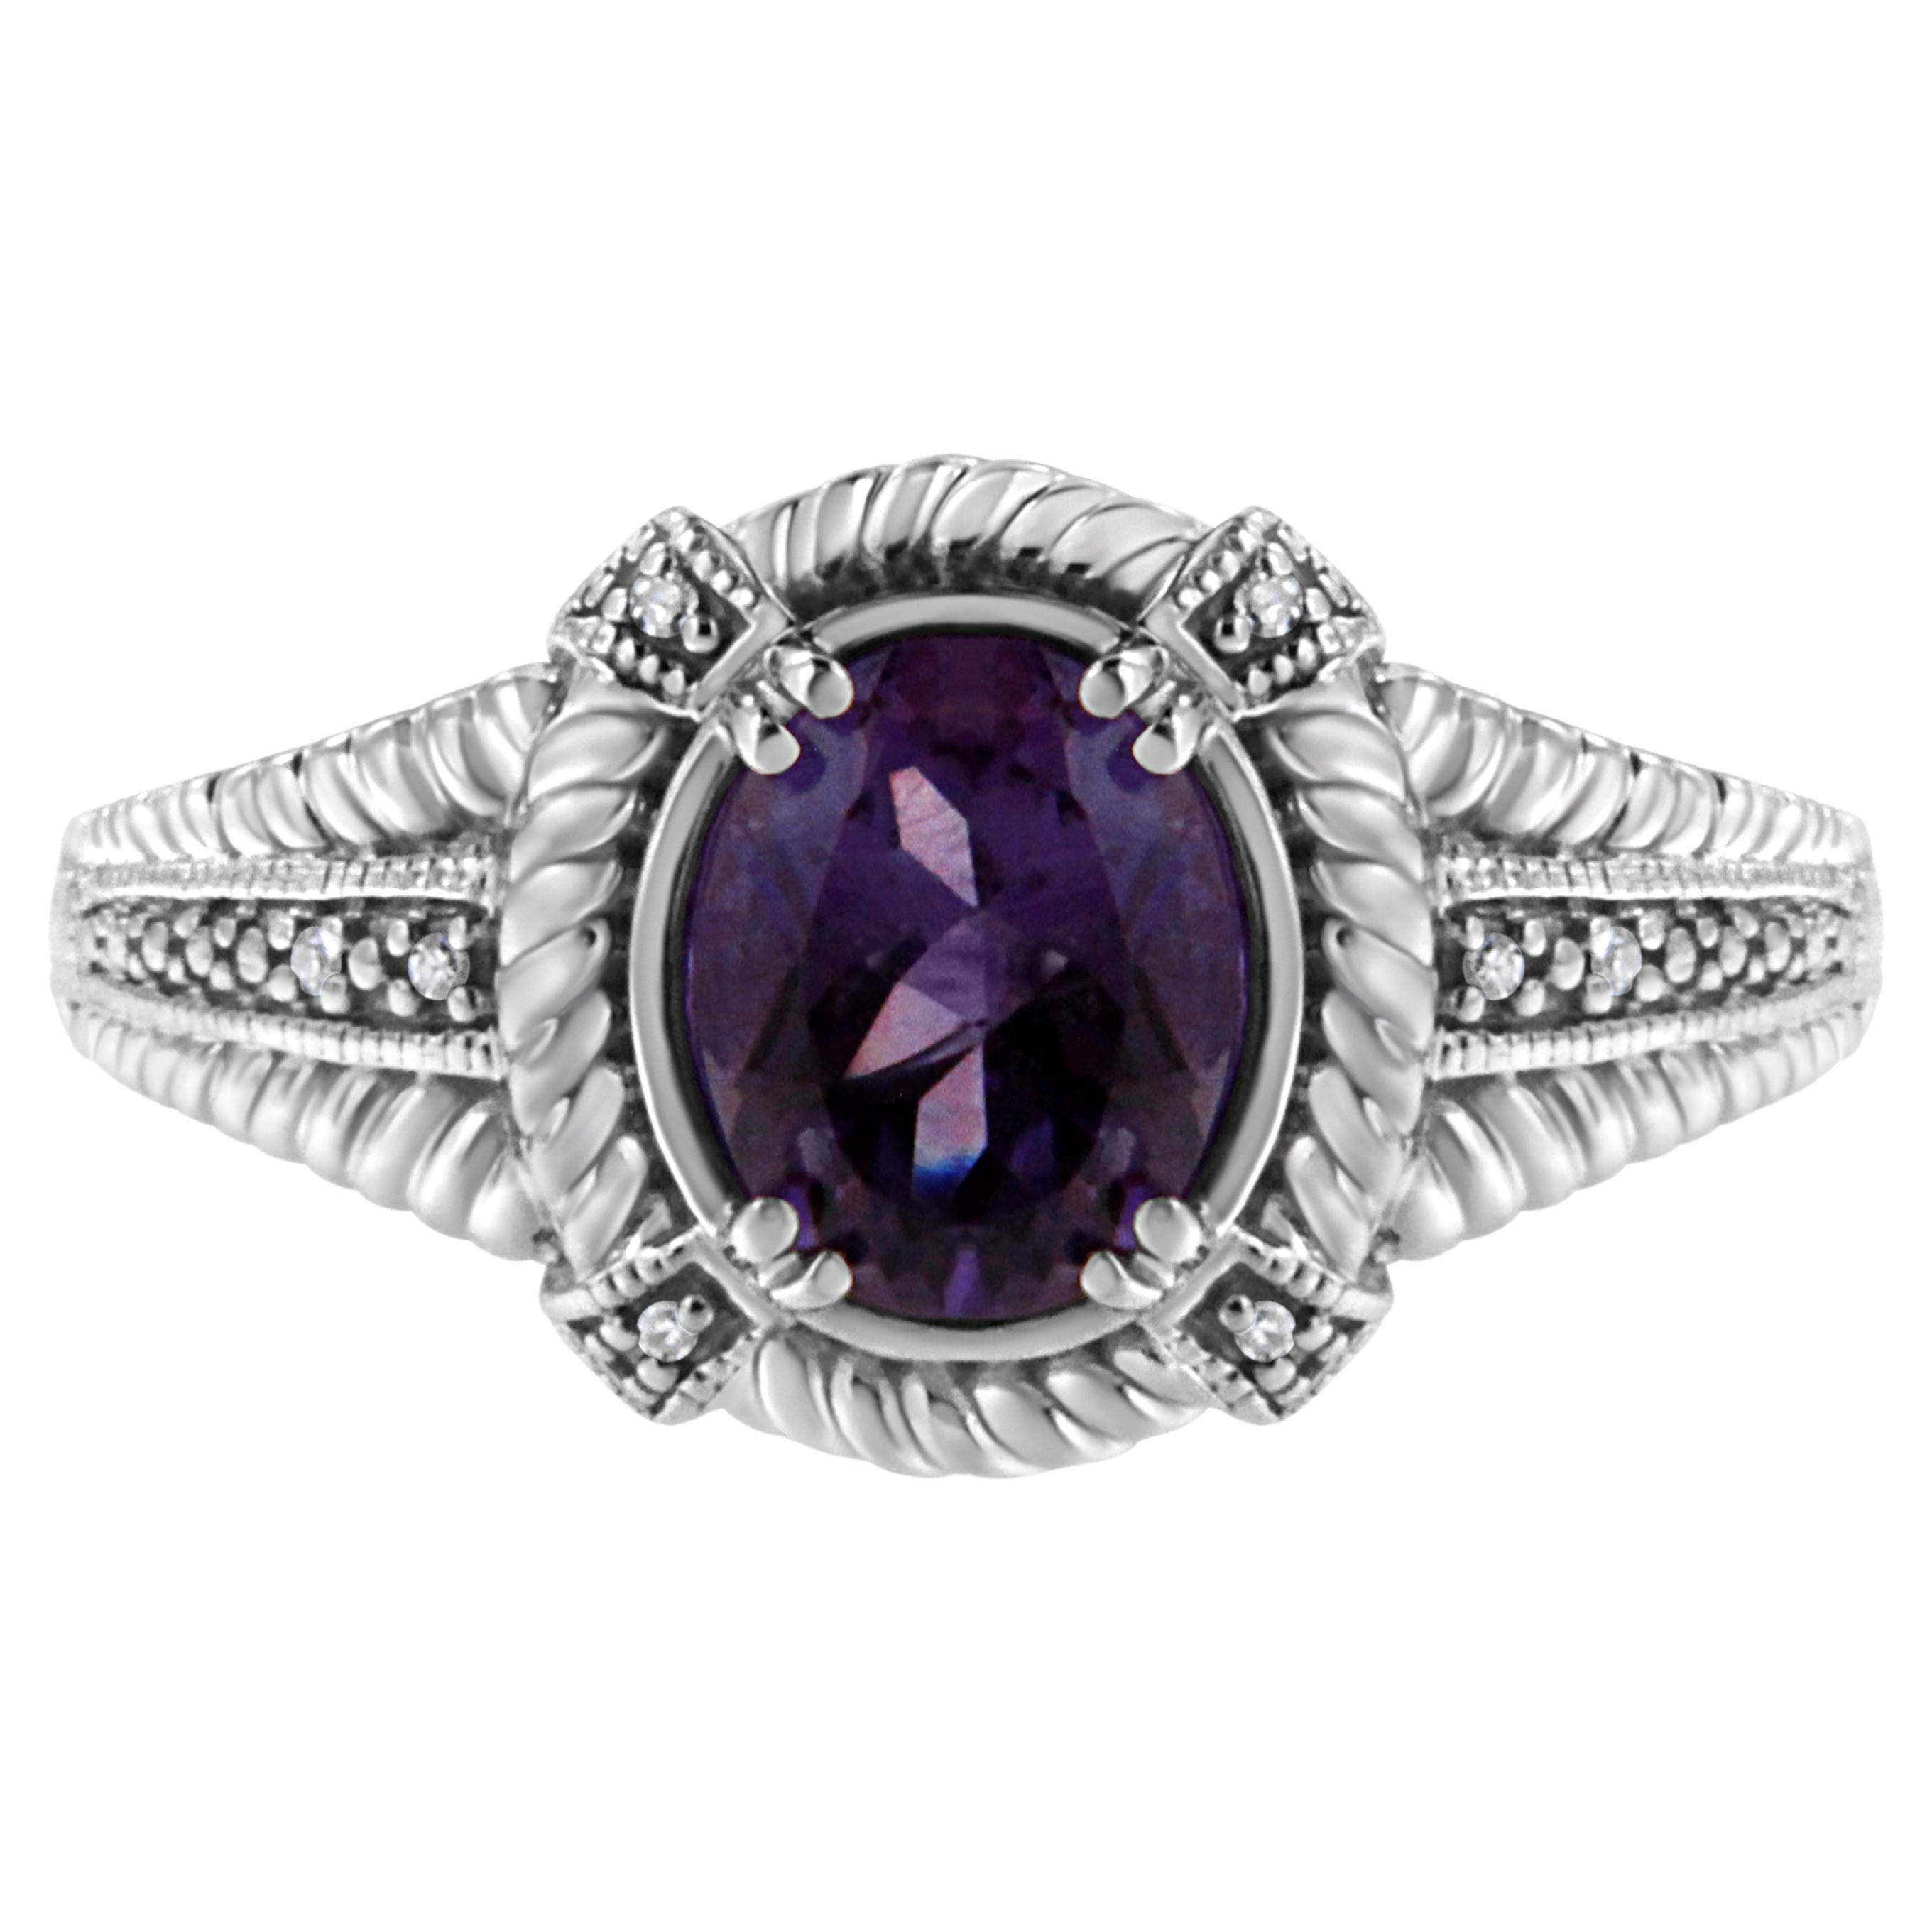 Bague en argent sterling avec solitaire d'améthyste violette de forme ovale et accent de diamant